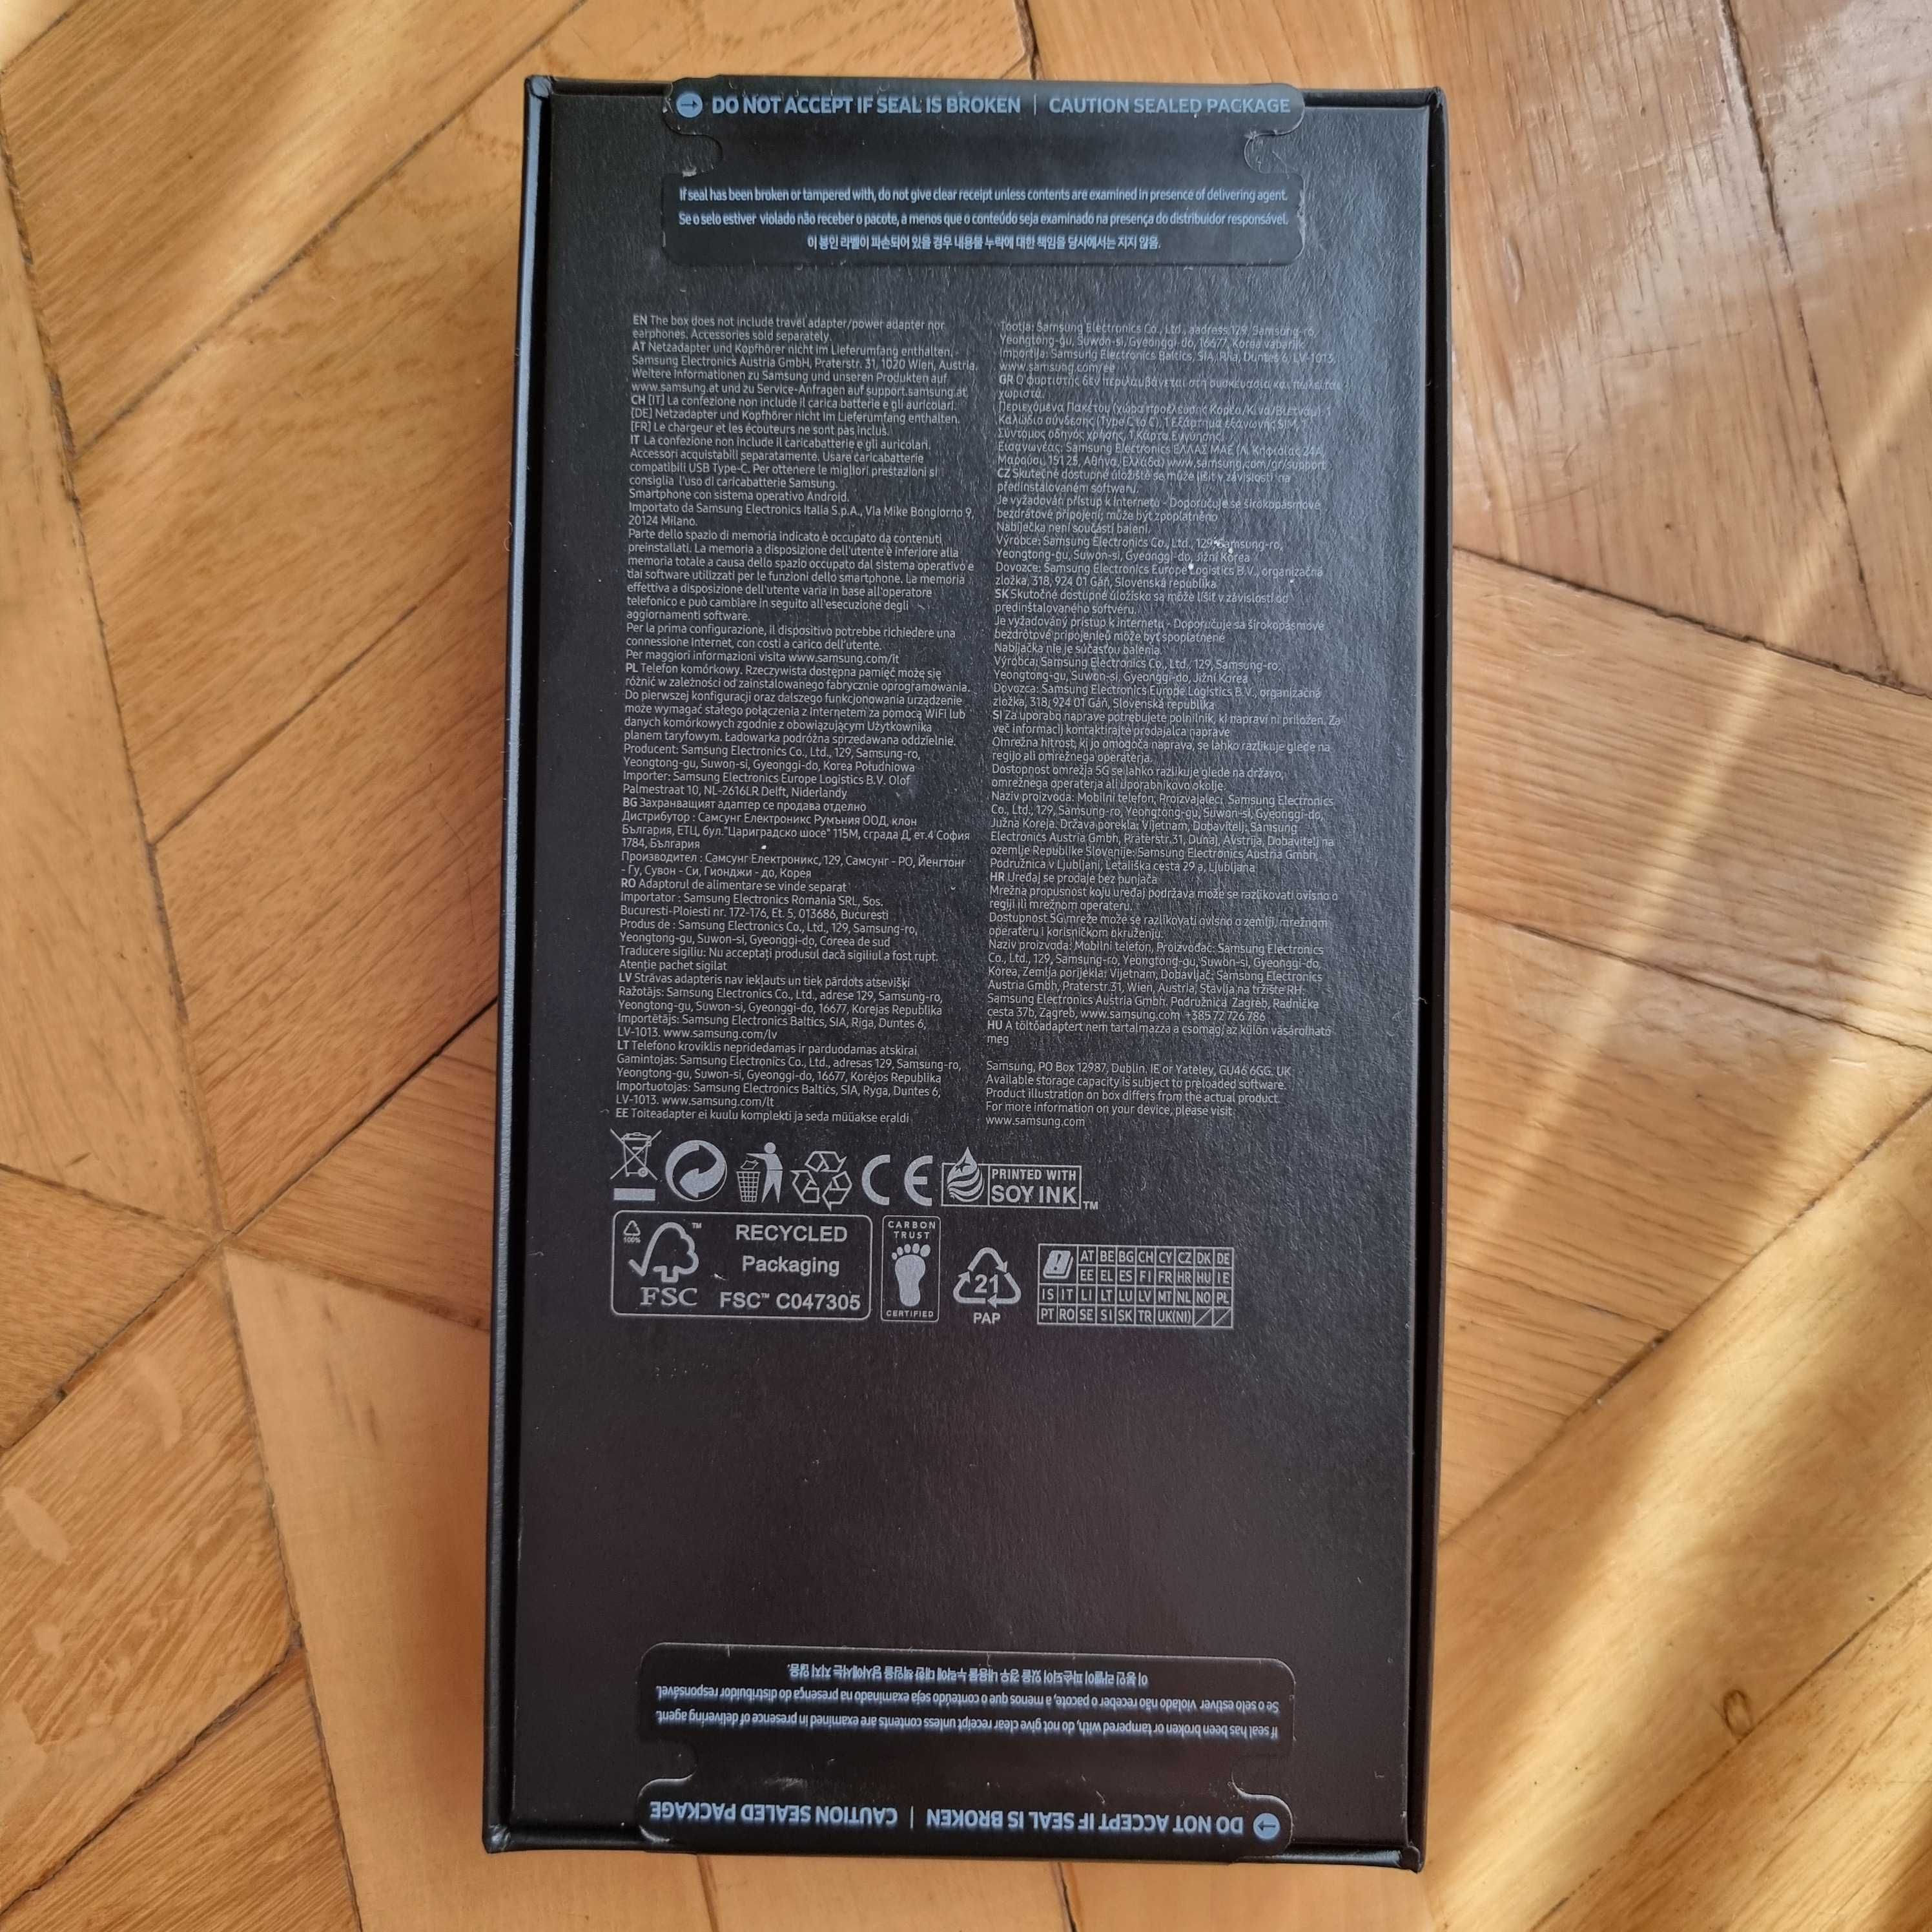 Samsung S23 Ultra - nowy sprzedam